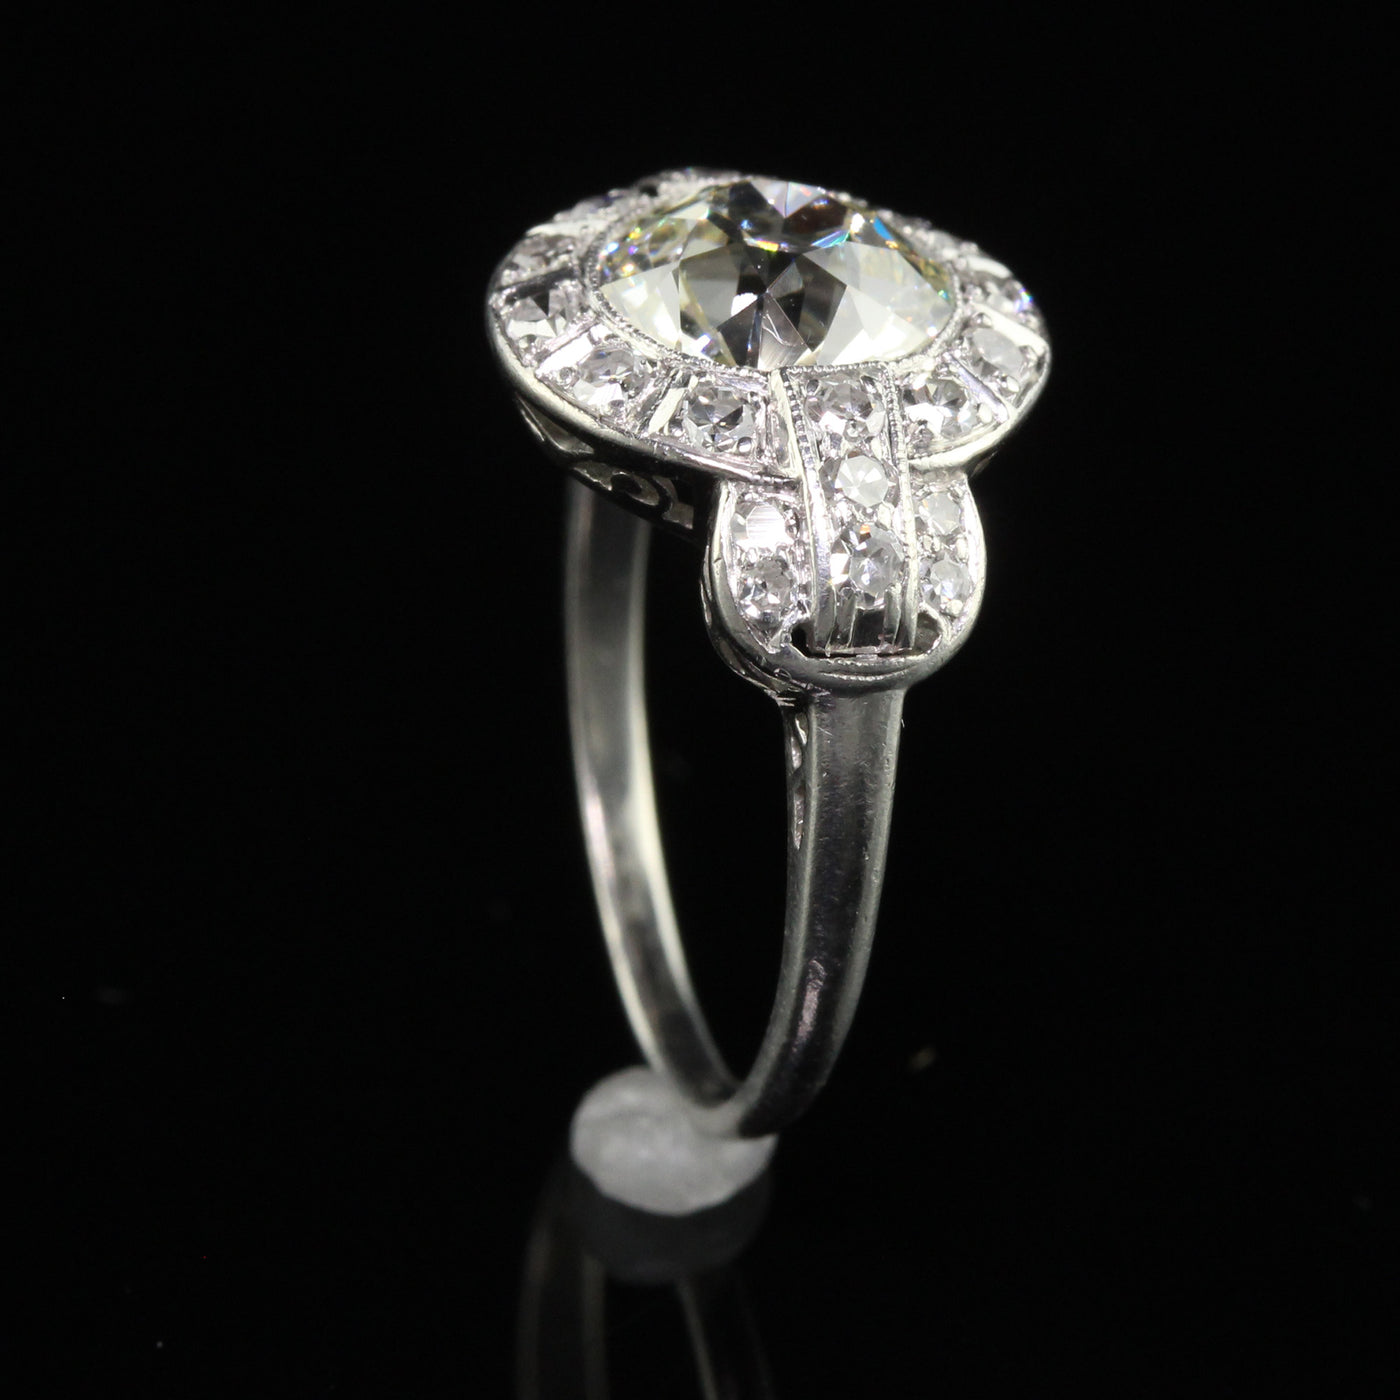 Antique Art Deco Platinum Old European Diamond Engagement Ring - GIA